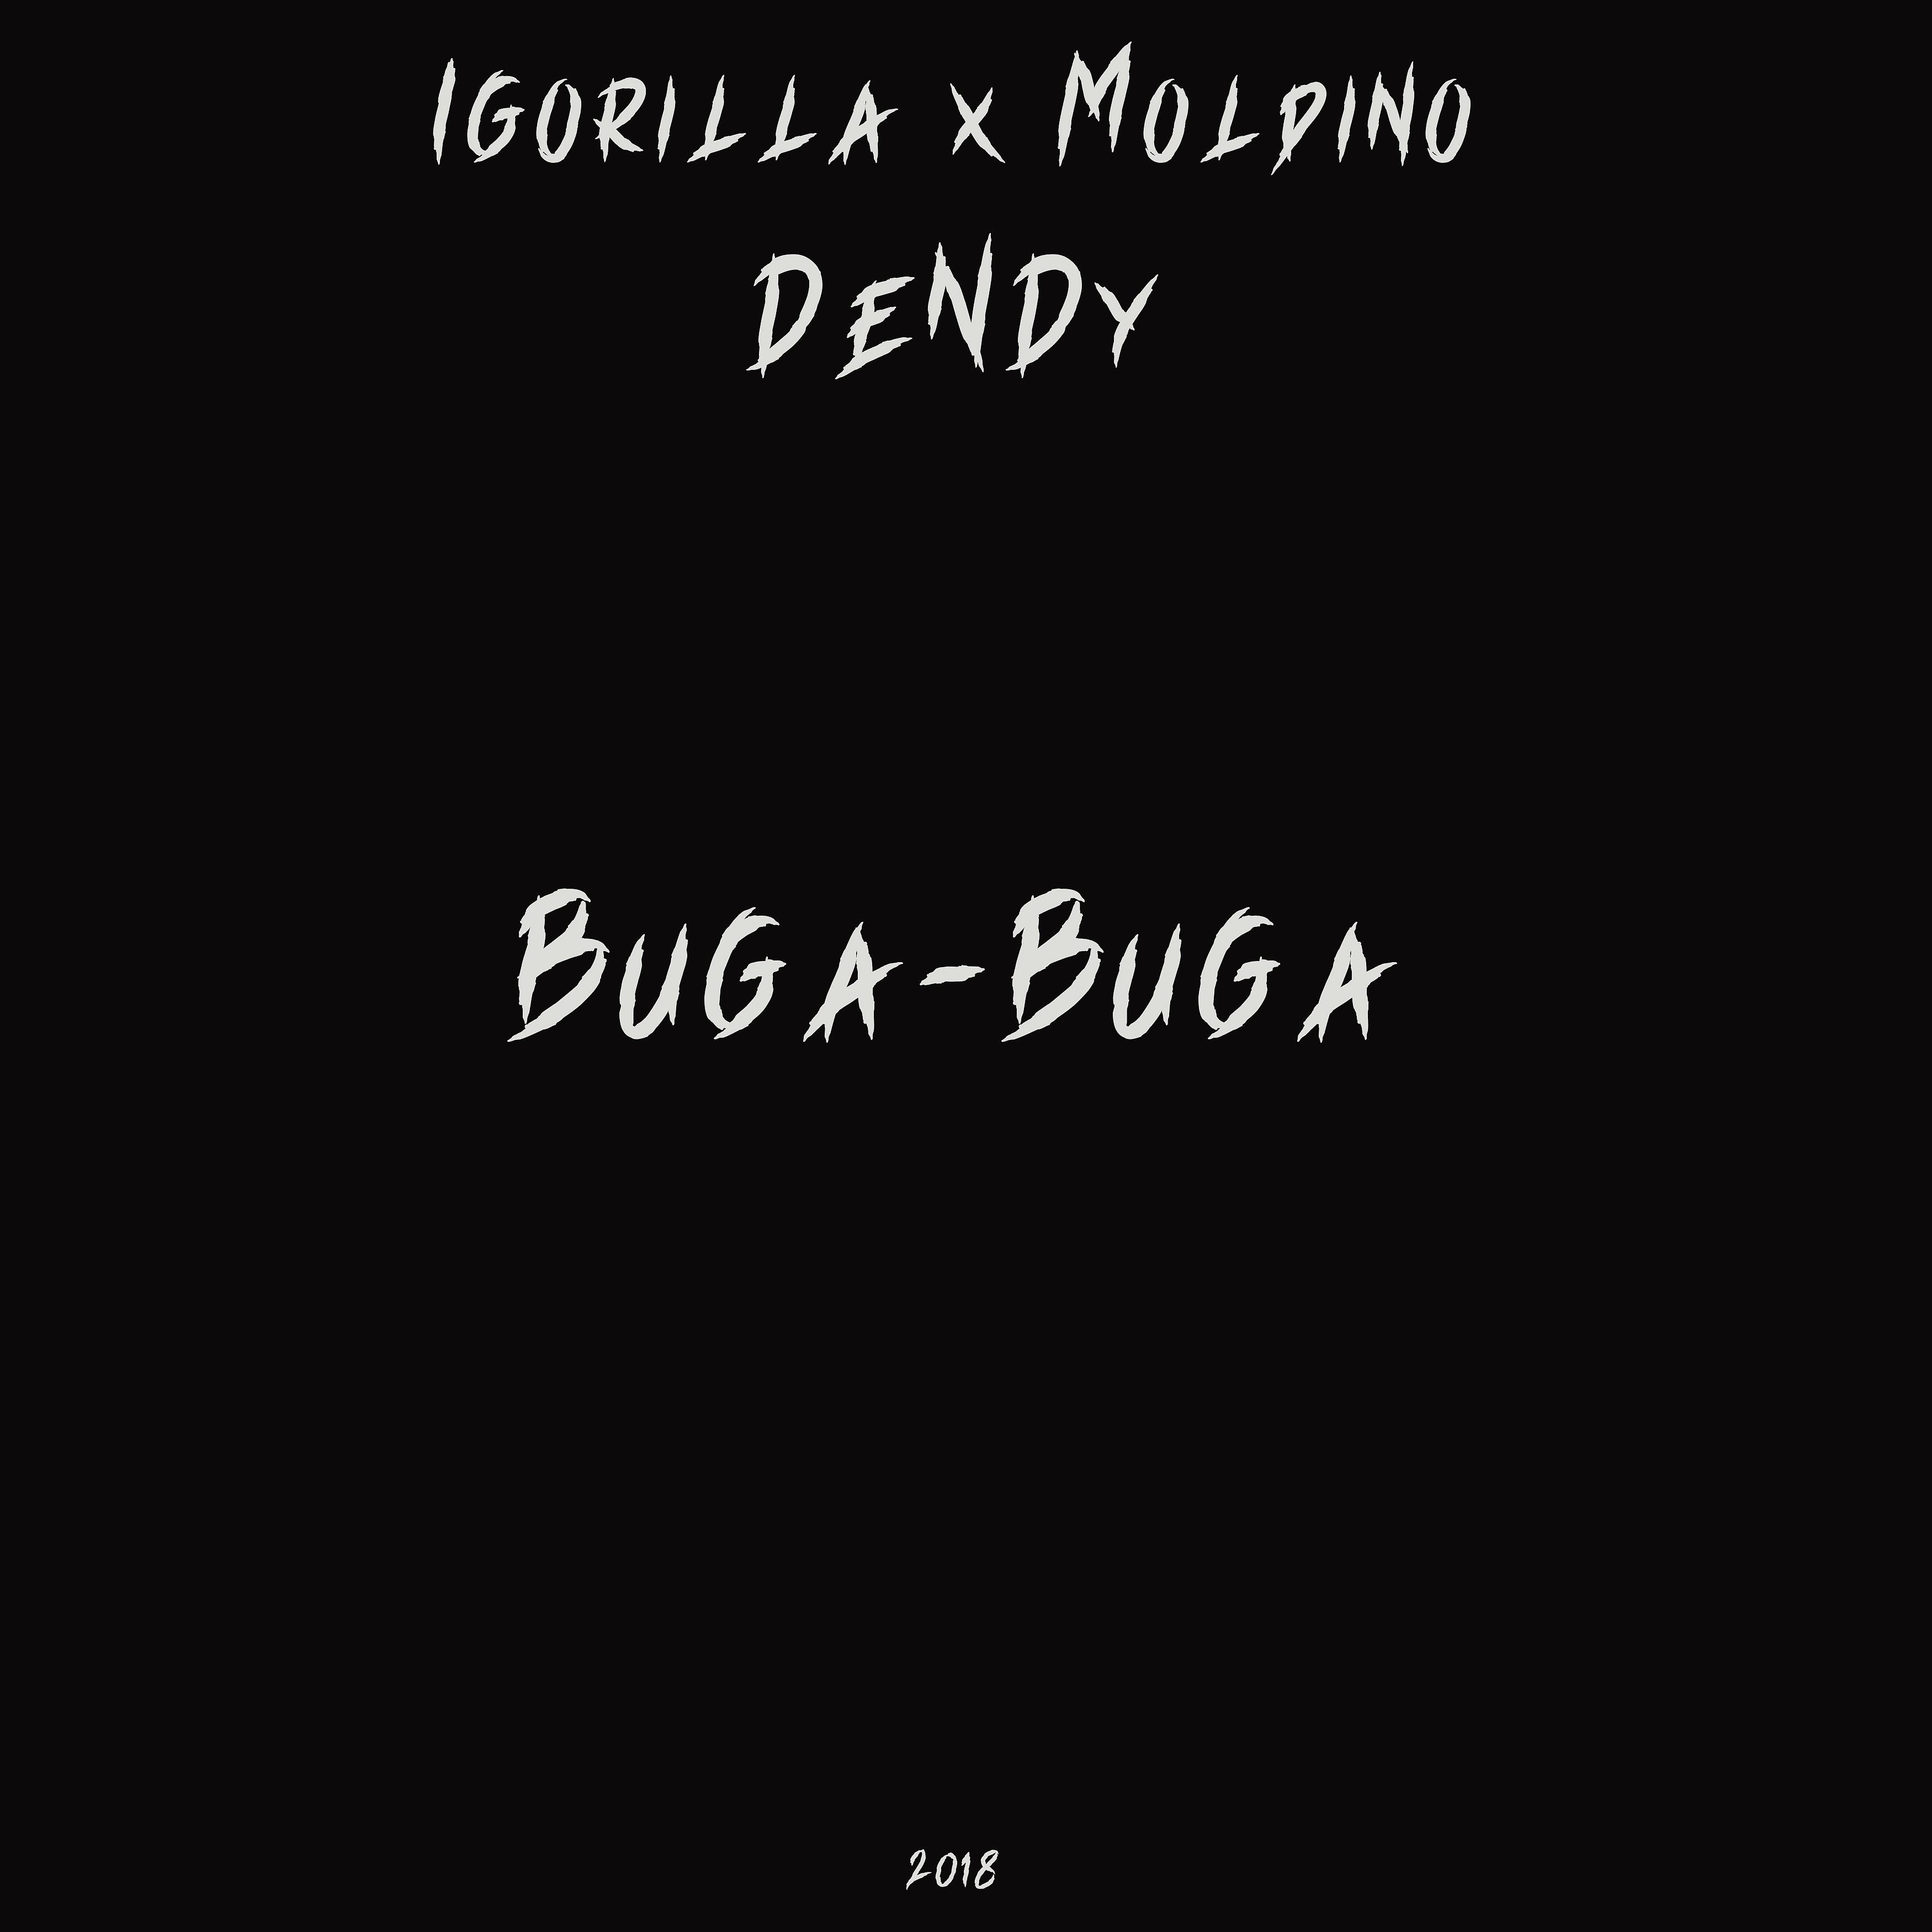 Постер альбома Buga-buga (feat. Igorilla, Moldino)